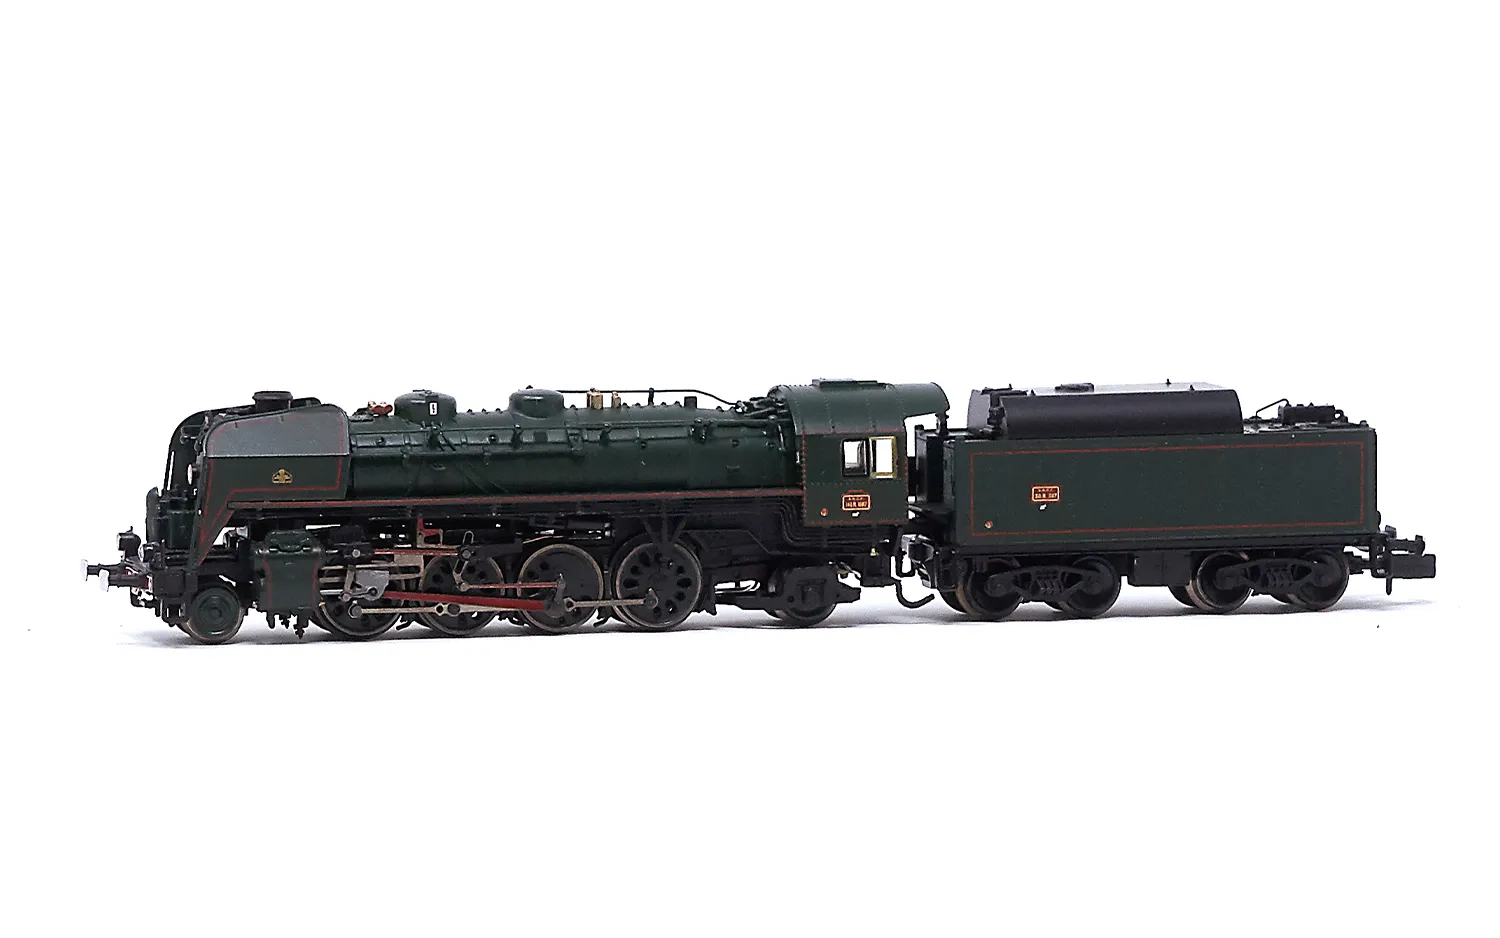 SNCF, Dampflokomotive 141 R 1187, mit Boxpok-Rädern auf allen Treib-und Kuppelachsen, Tender mit großem Ölbunker, in grüner Lackierung, Ep. III